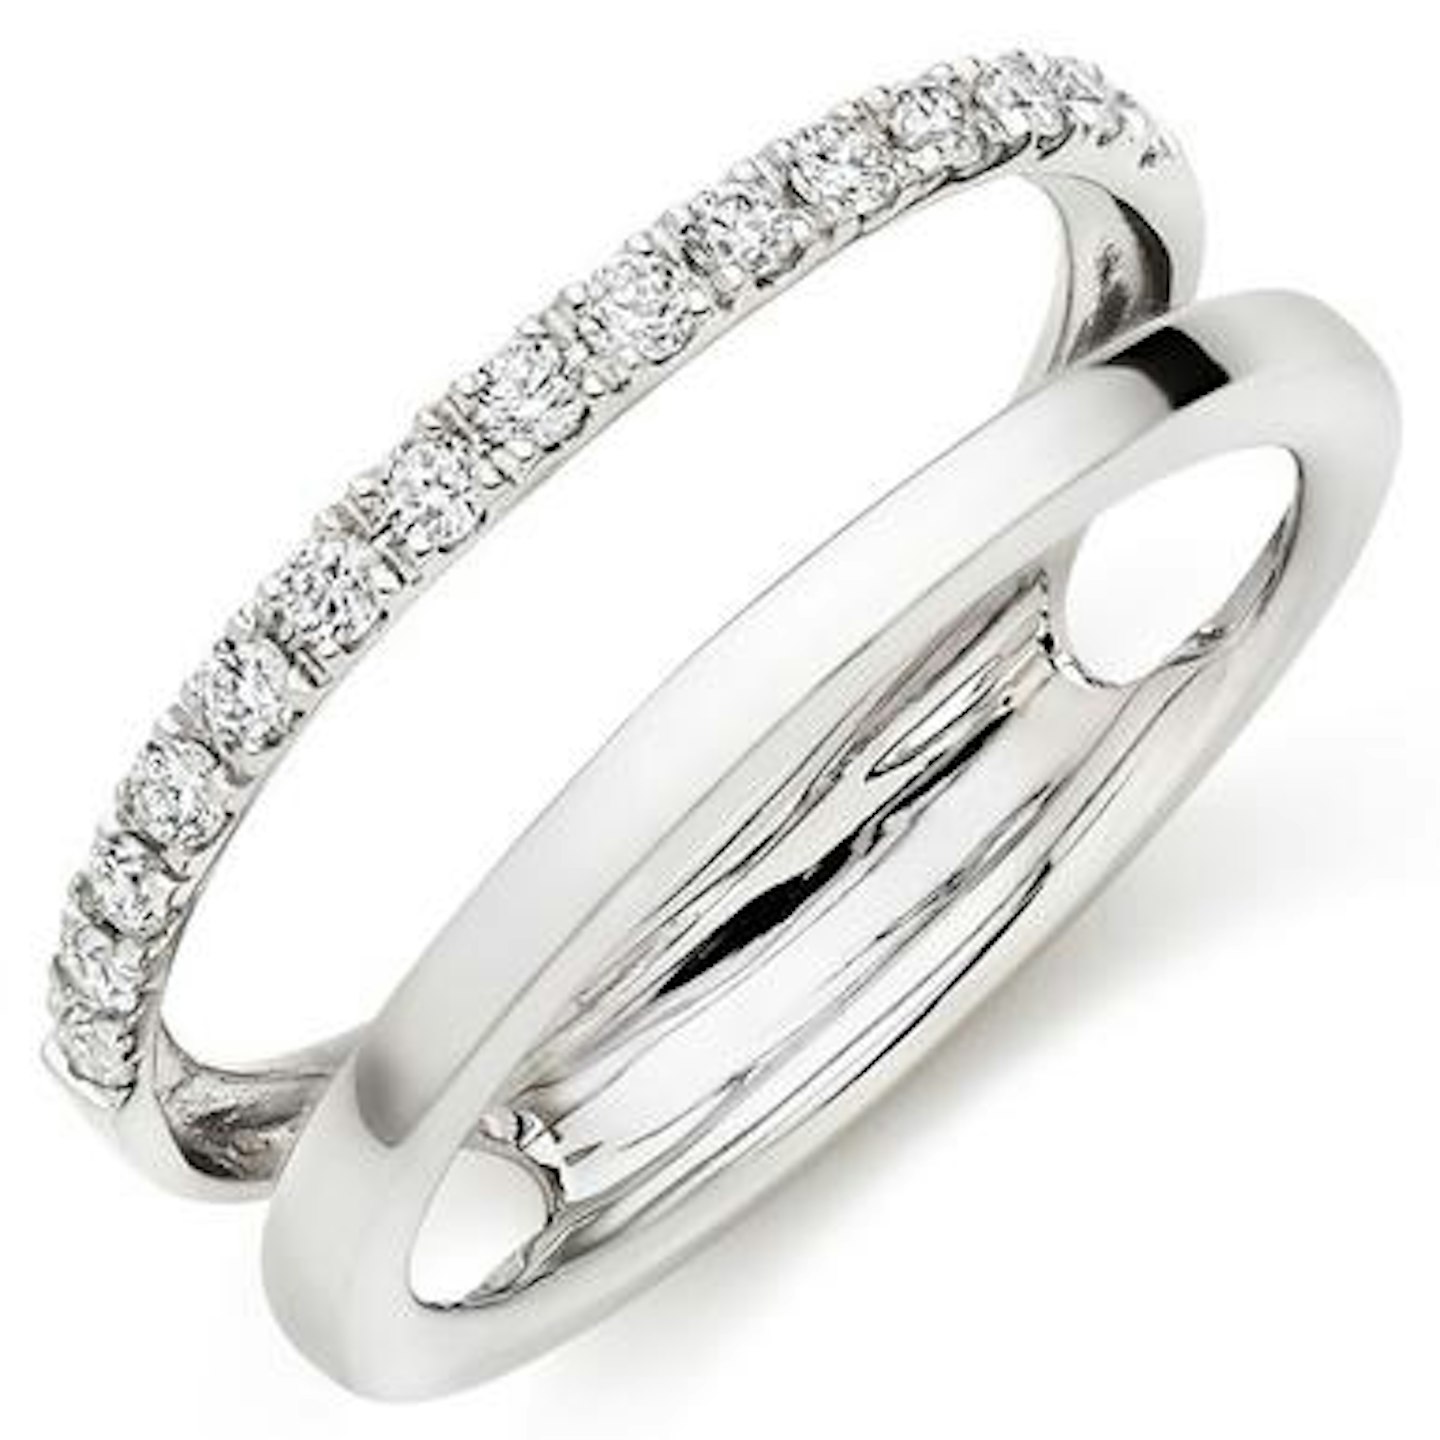 Platinum Diamond Silhouette Ring £1,950